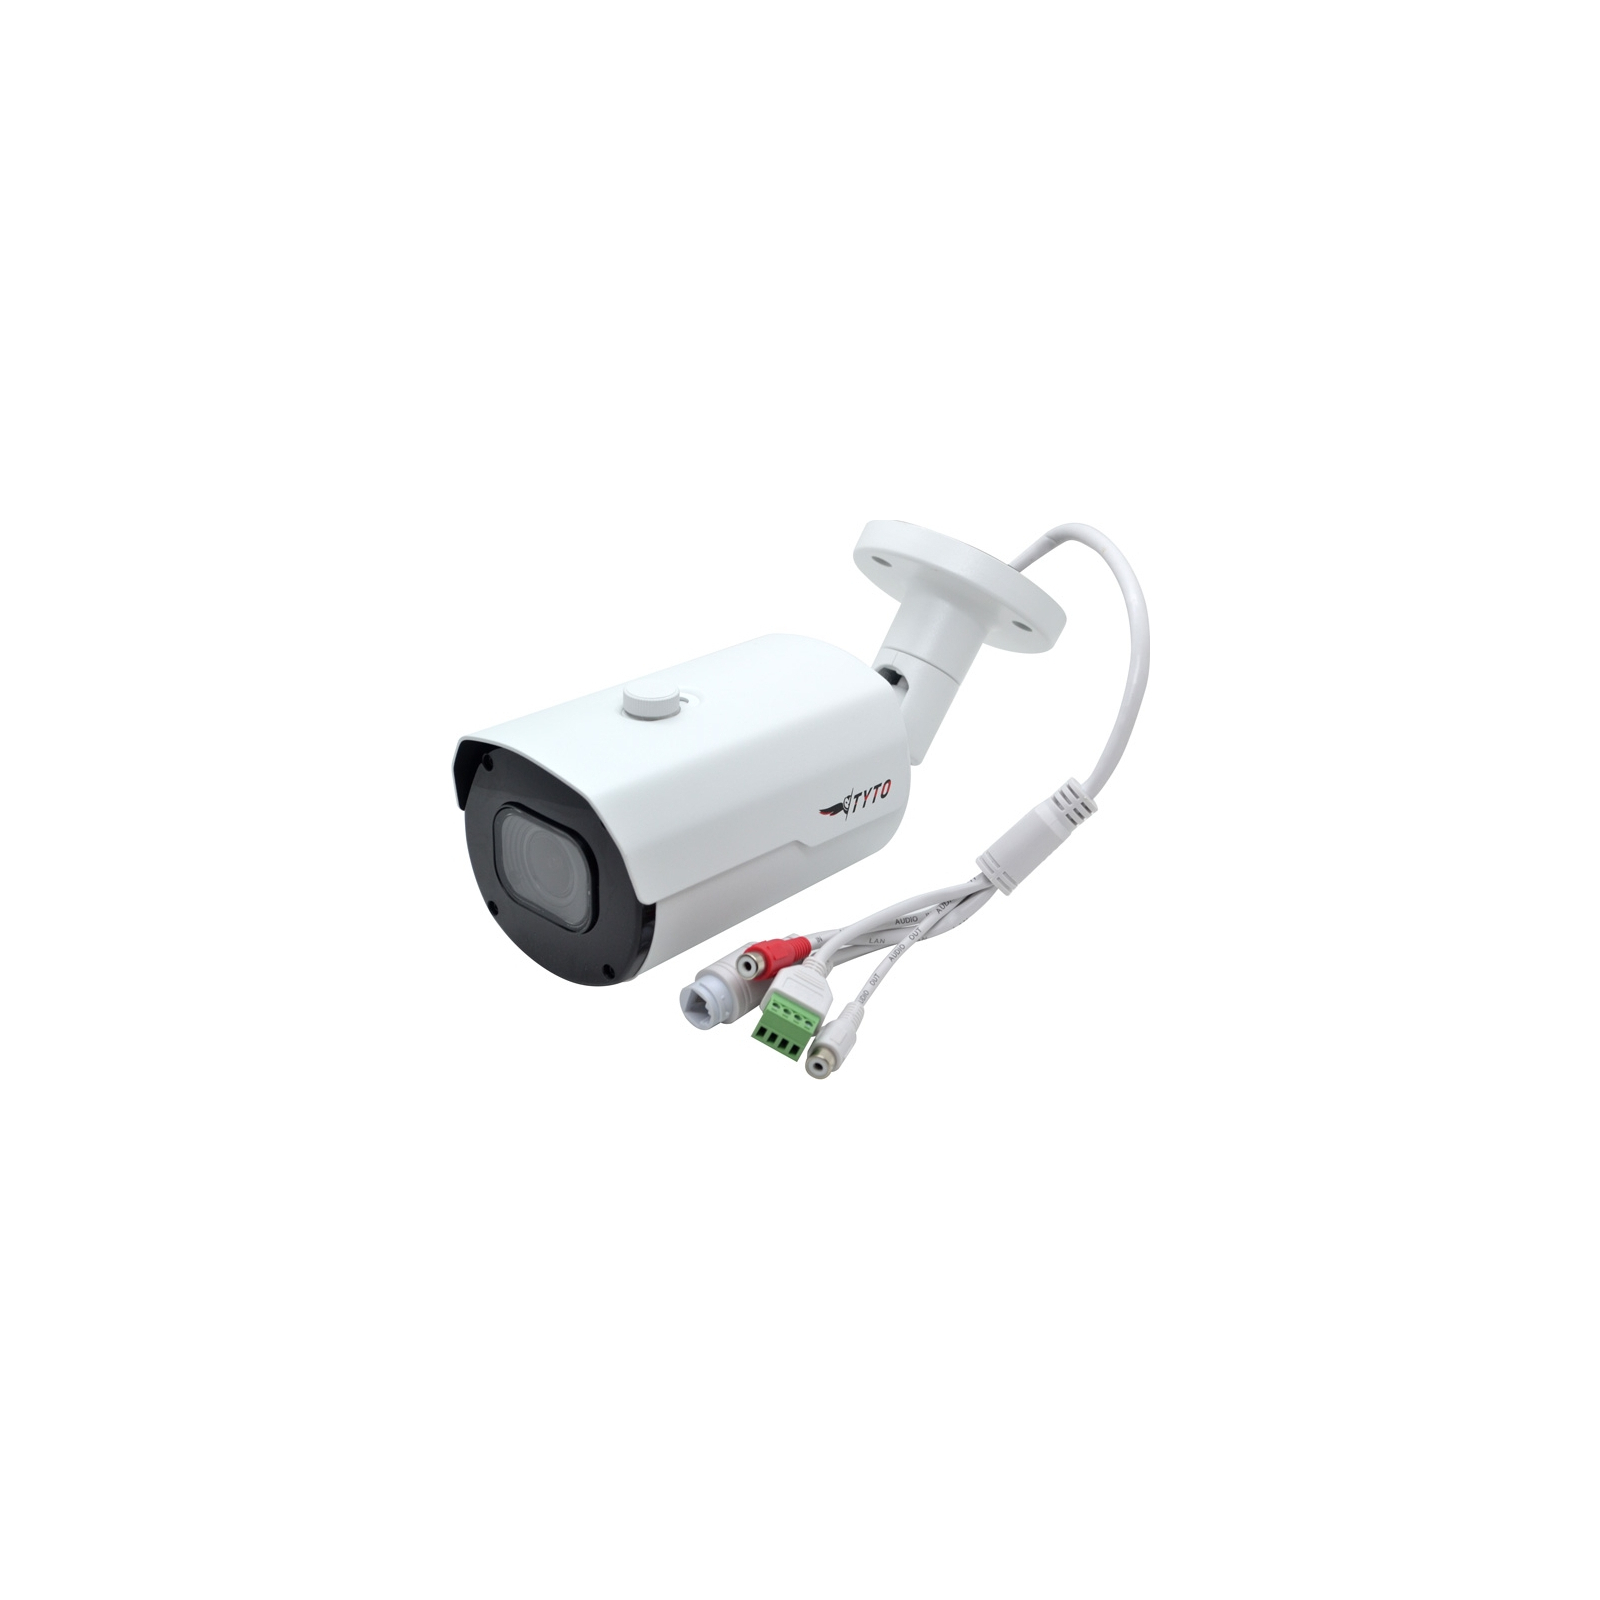 Камера відеоспостереження Tyto IPC 5B2812-G1SM-60